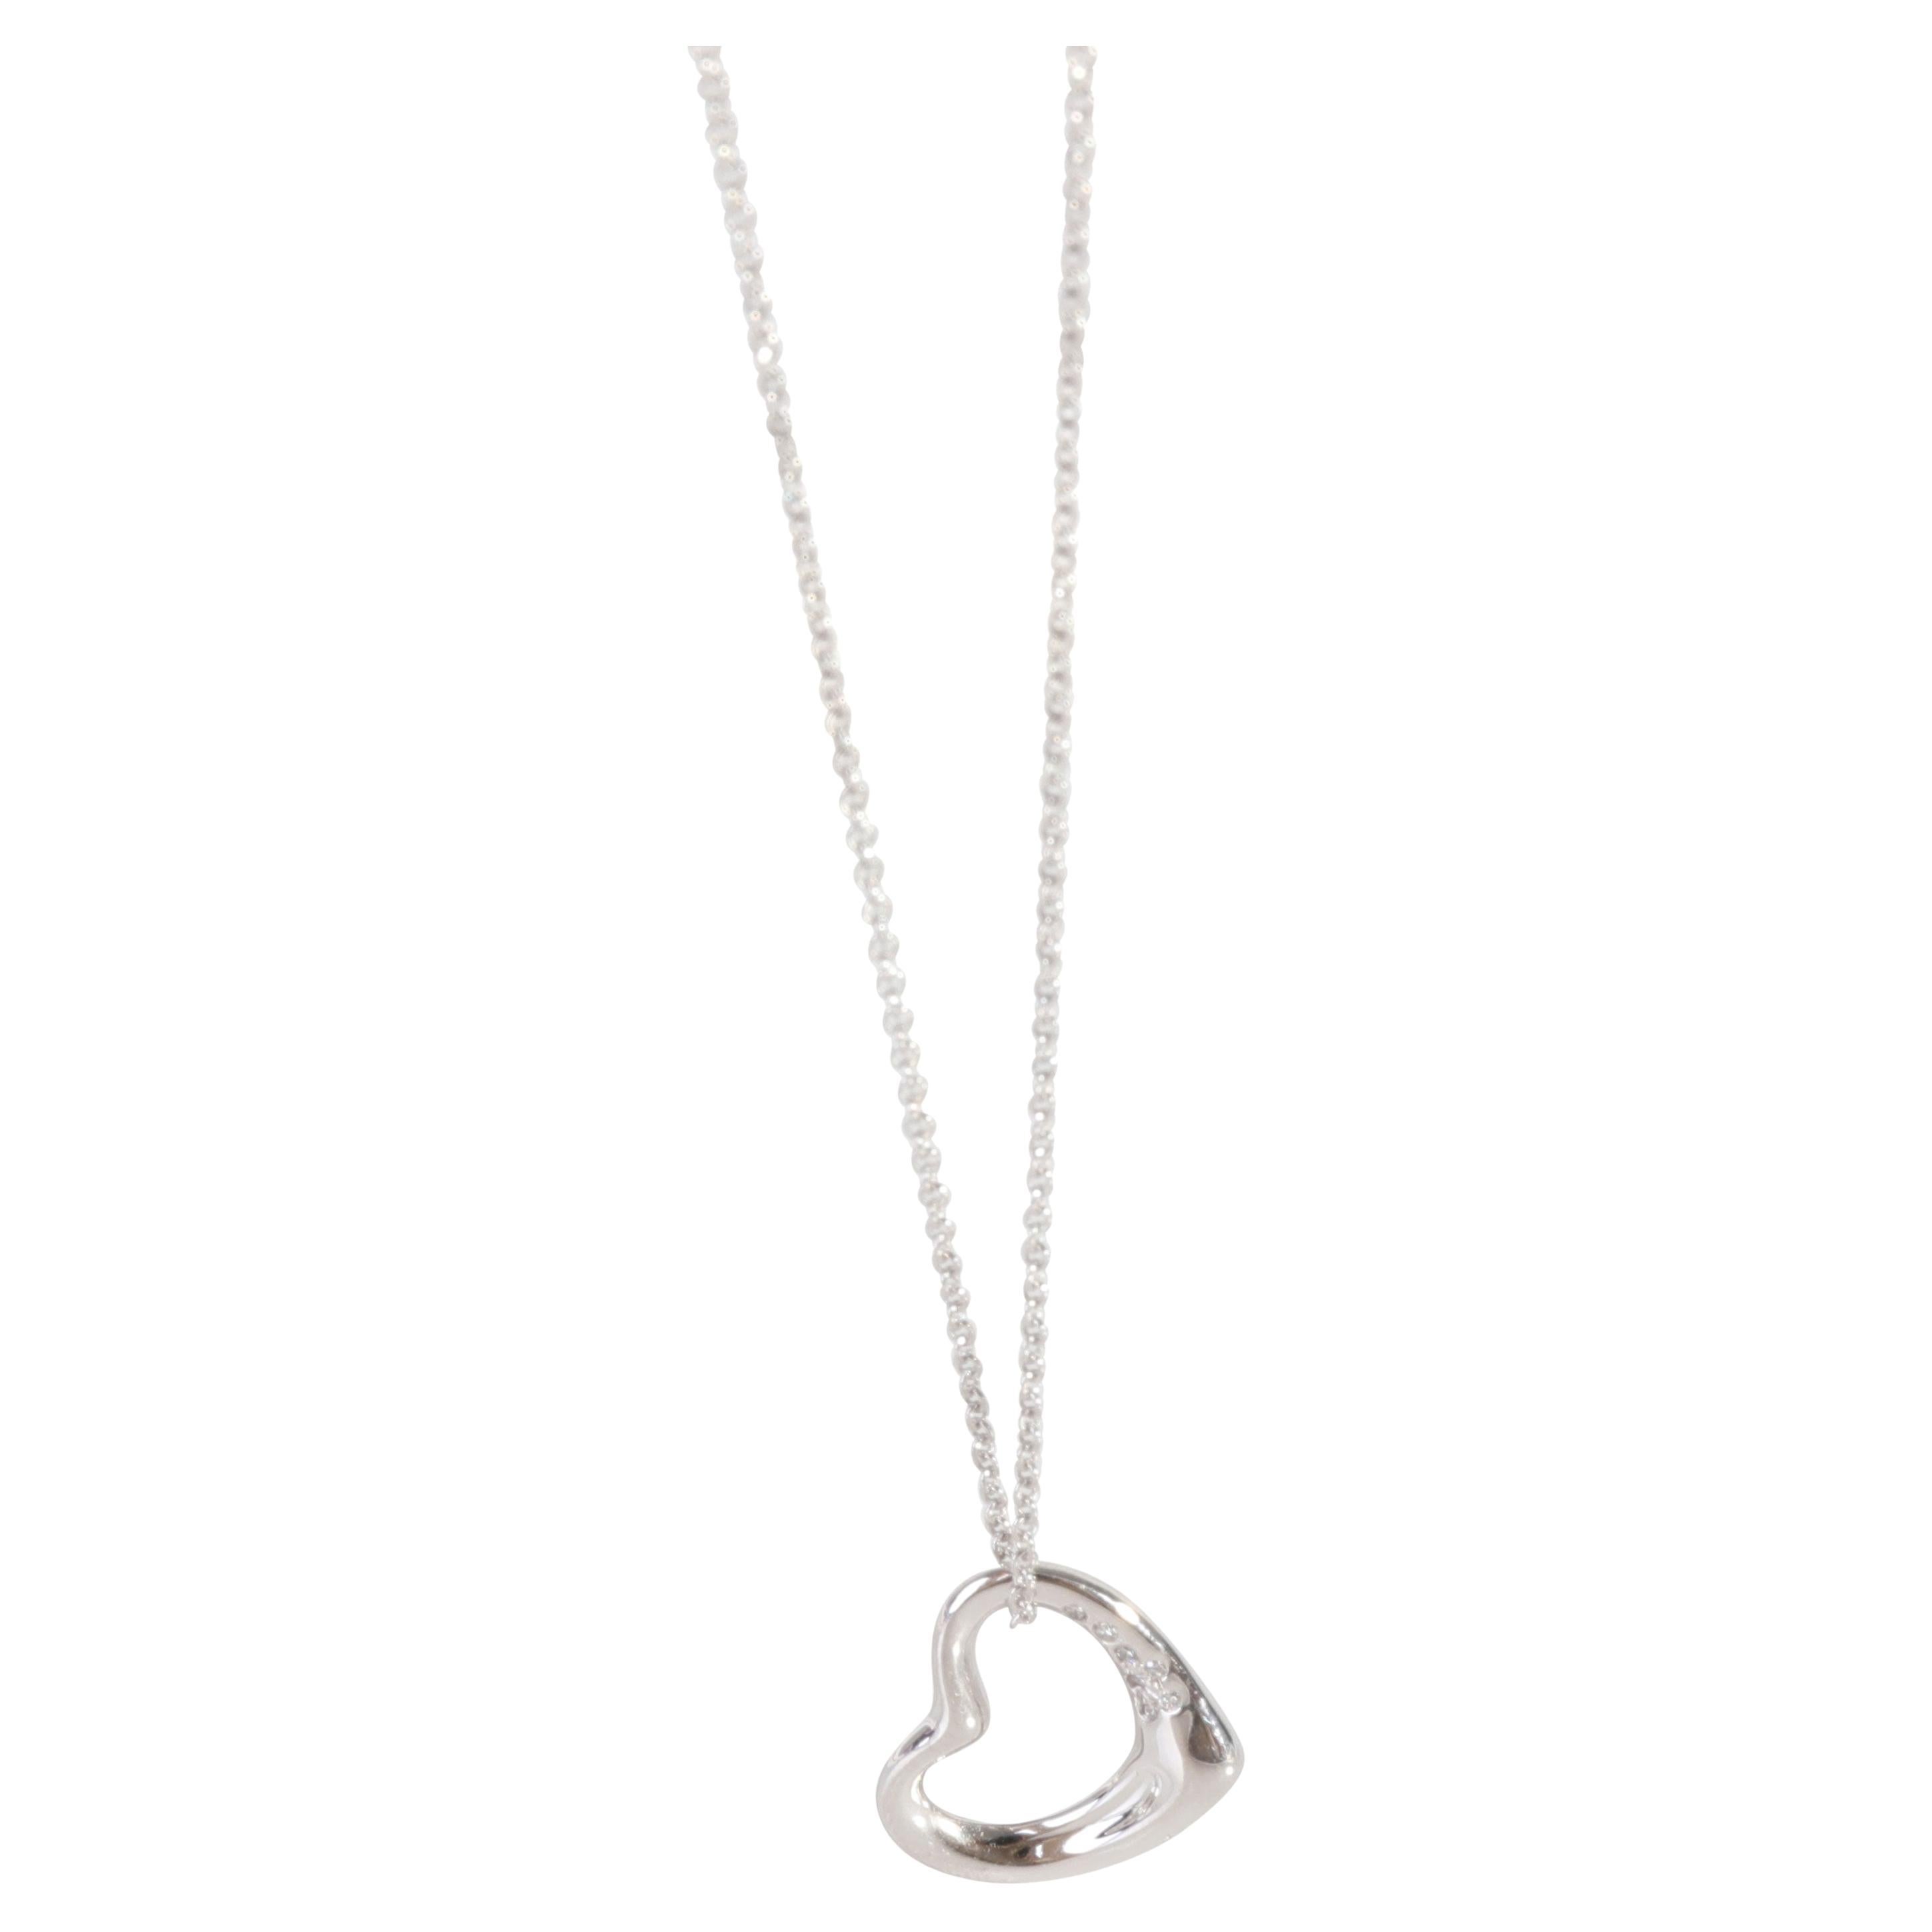 Tiffany & Co. Elsa Peretti Open Heart Diamond Pendant in 950 Platinum 0.04 CTW